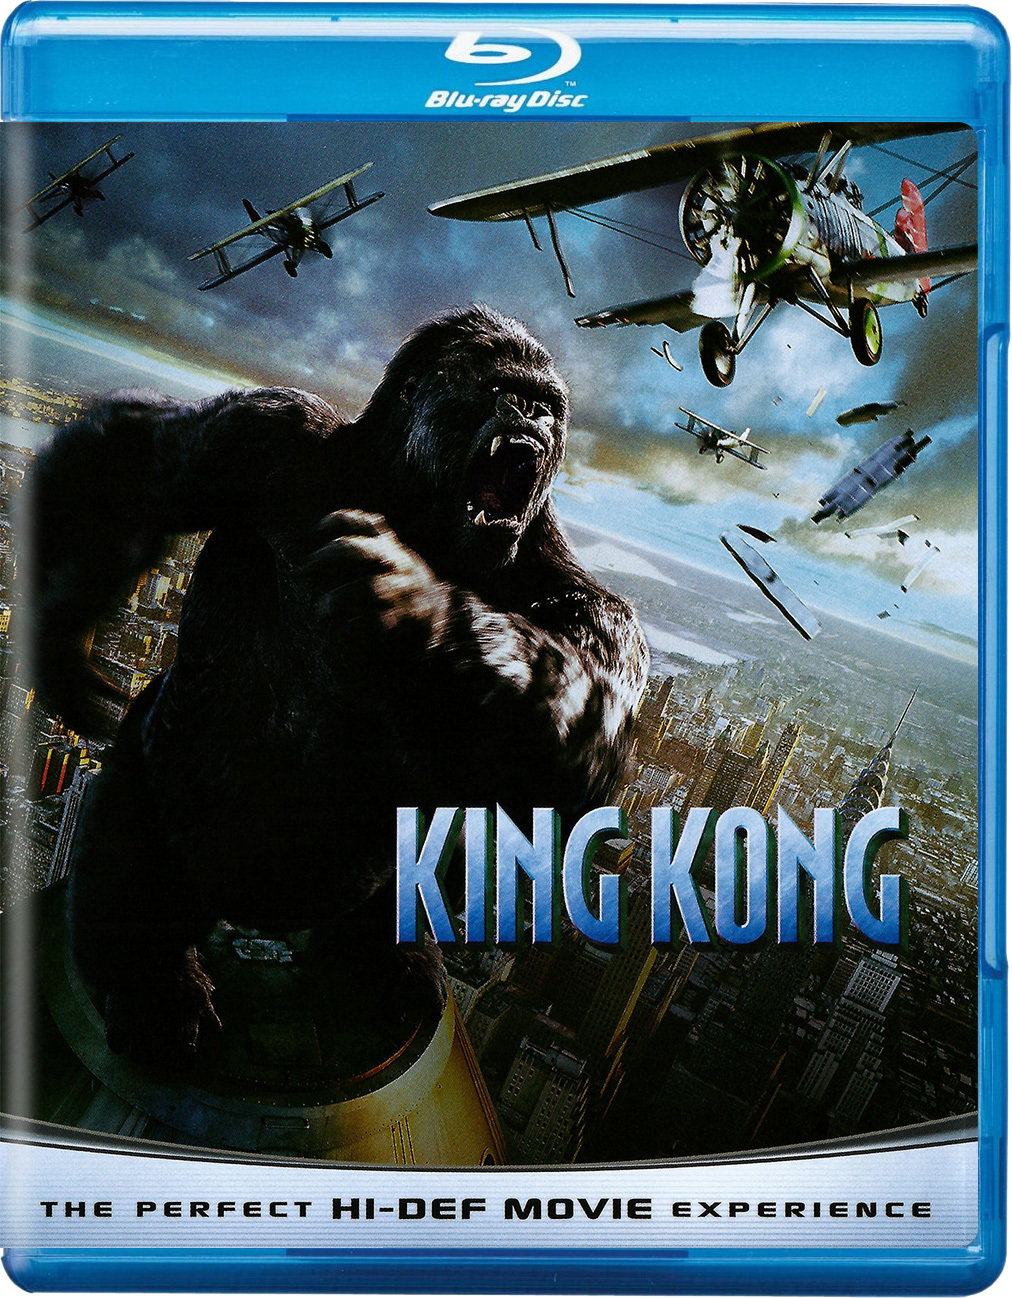 king - King Kong: 7-Movie Collection (1933-2017) Colección de 7 Películas de King Kong (1933-2017) [DTS AC3 5.1/2.0/1.0 + SUP/SRT/SUB + IDX] [Blu Ray-Rip] [DVD-RIP] 2731_front